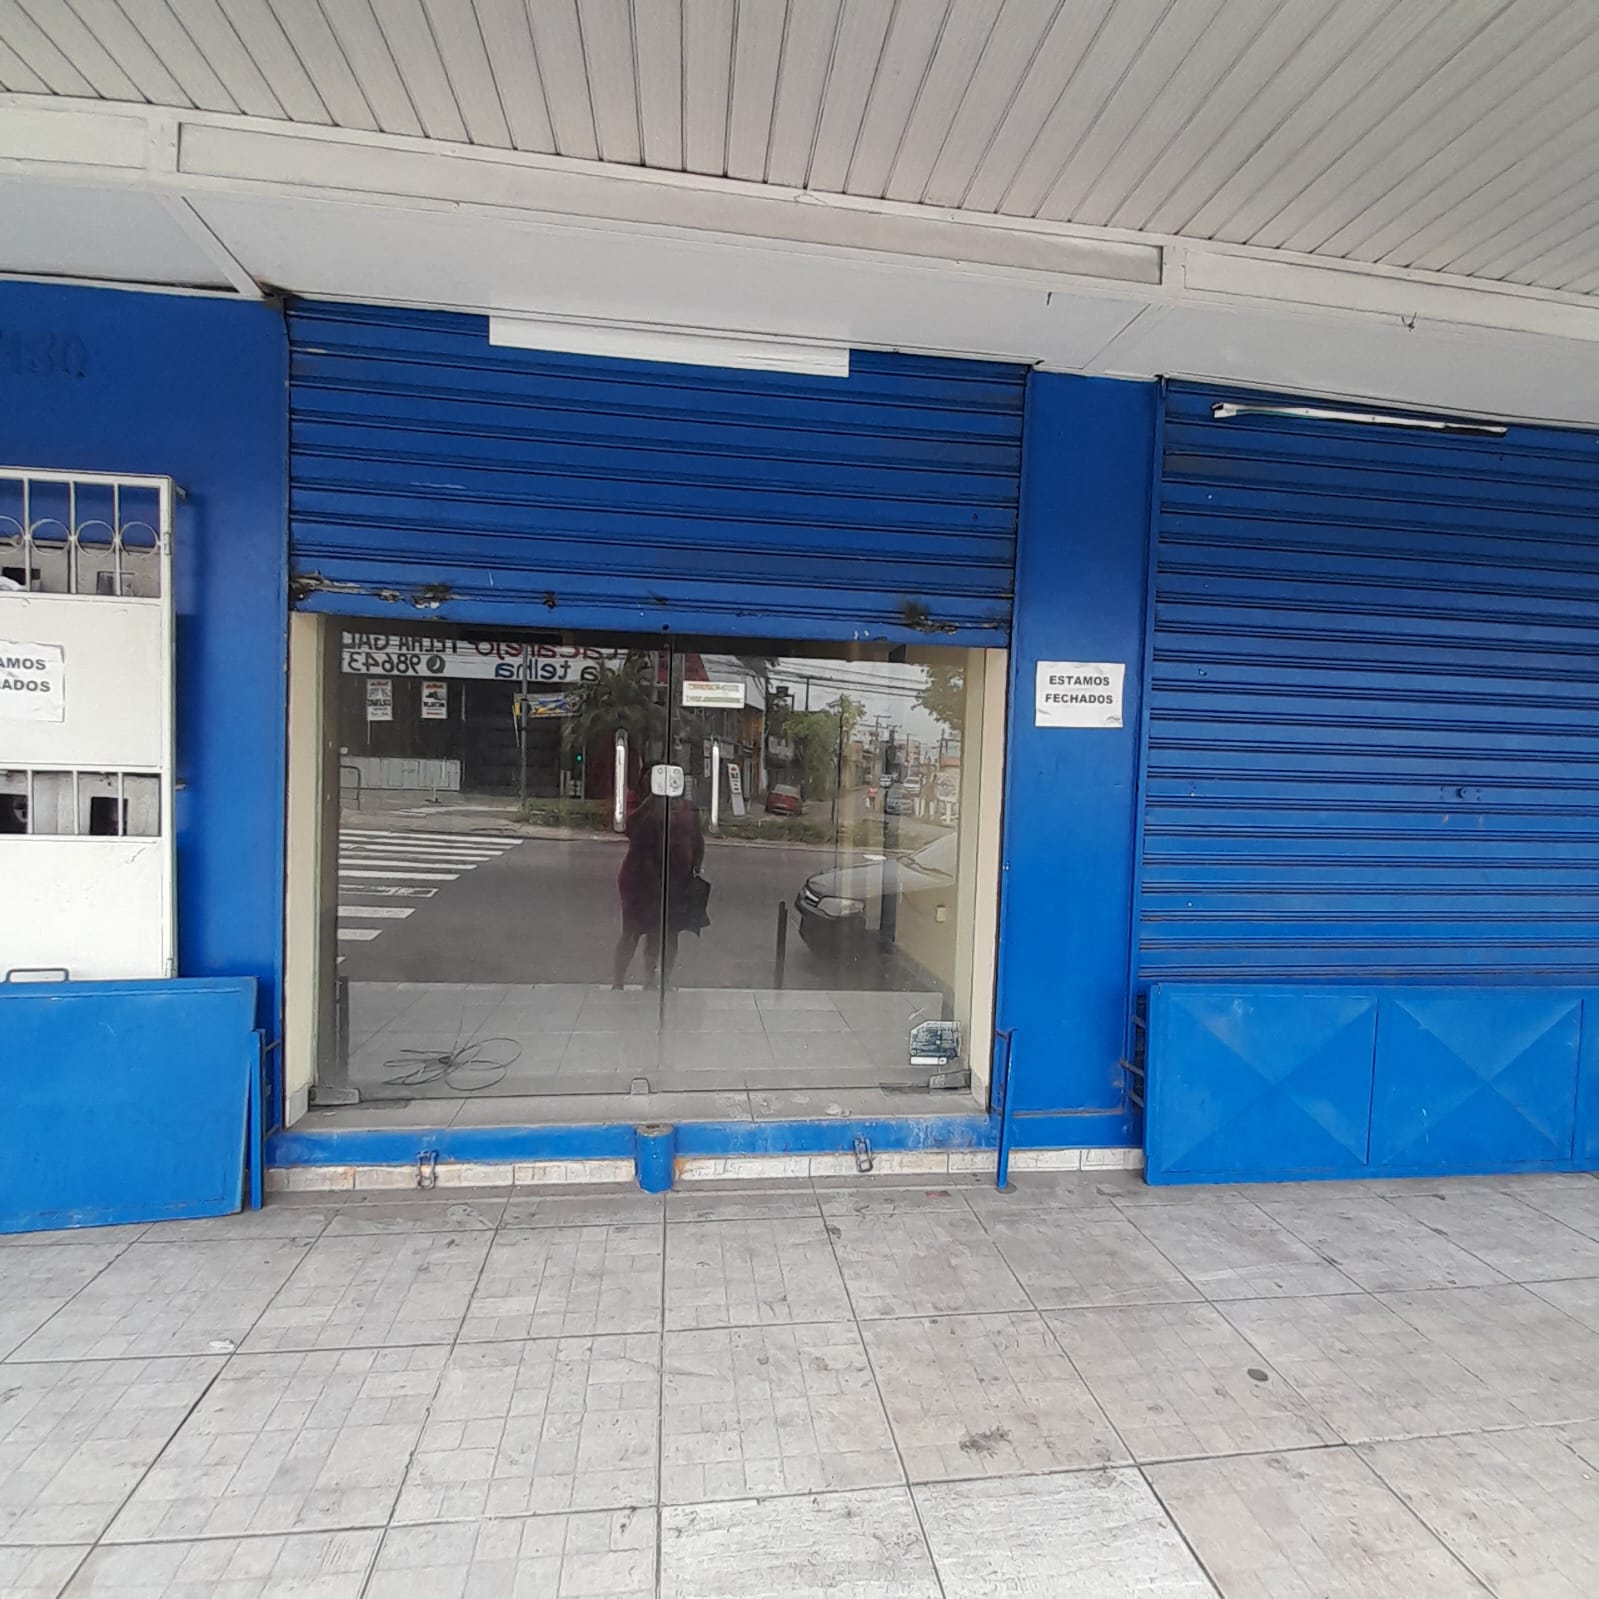 Imagem Sala Comercial para Alugar, 40 m²em São José Operário - Manaus